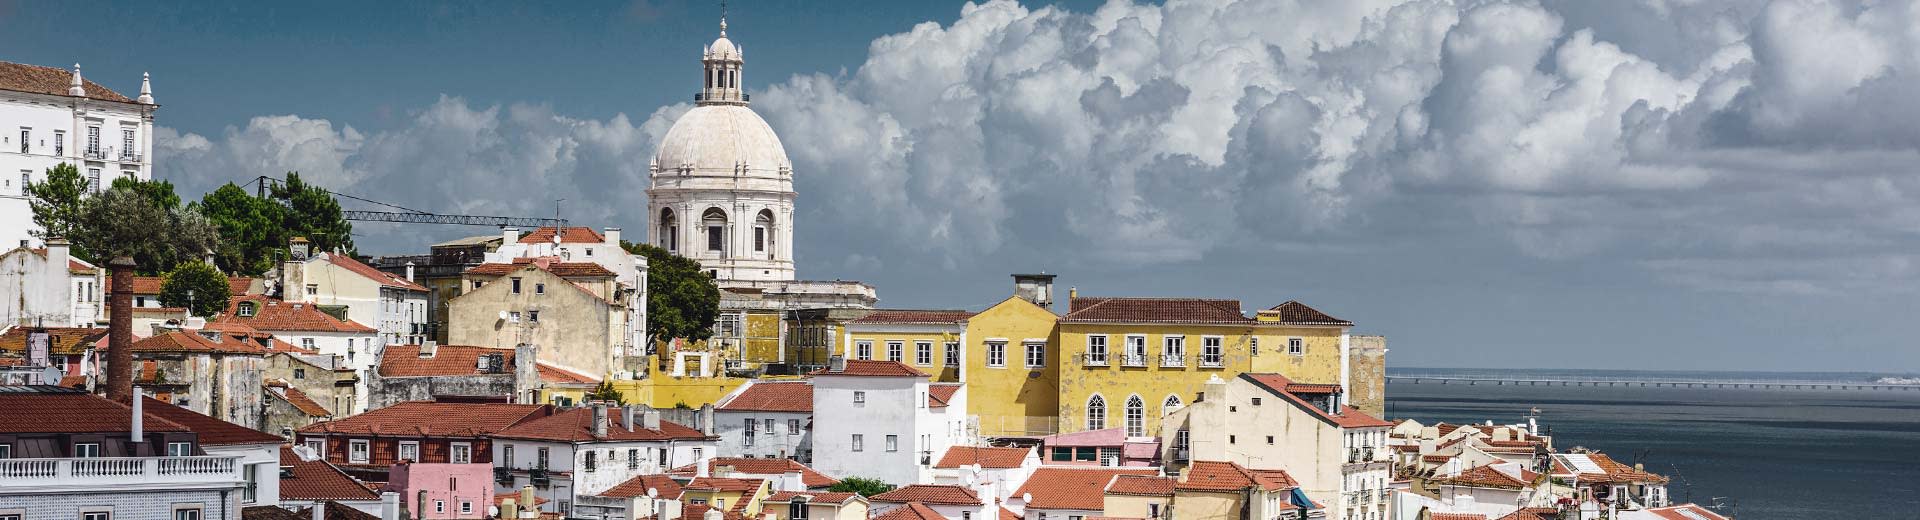 Les constructions de couleur pastel de Lisbonne se sont placées dans un ciel nuageux.